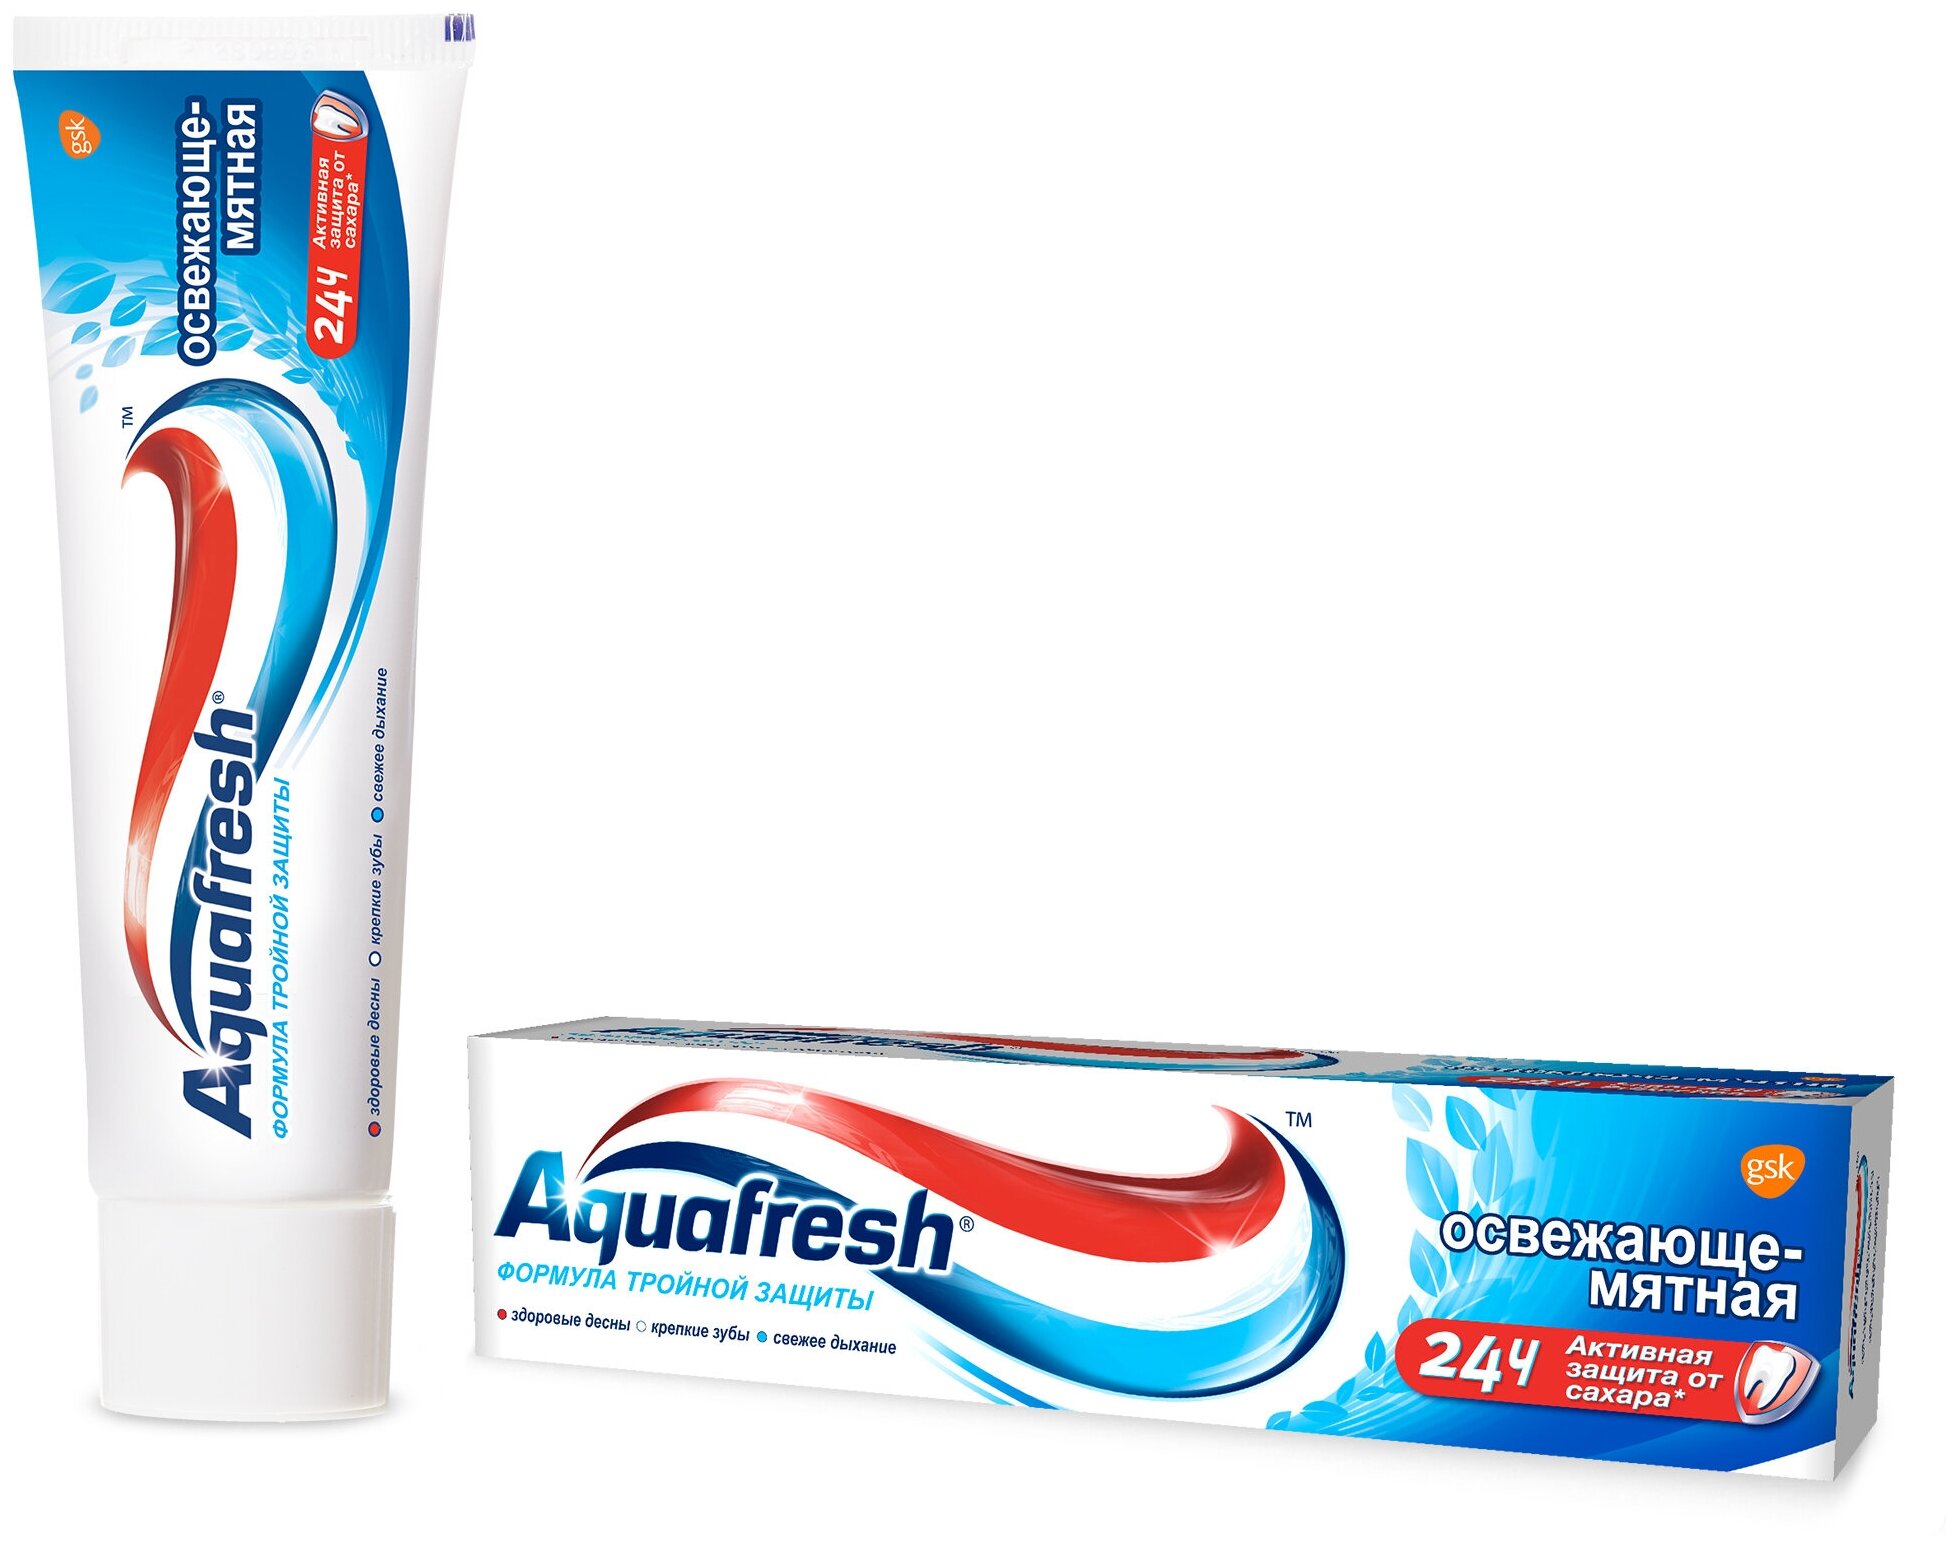 Зубная паста Aquafresh Тройная защита Освежающе-мятная, 100 мл, 170 г